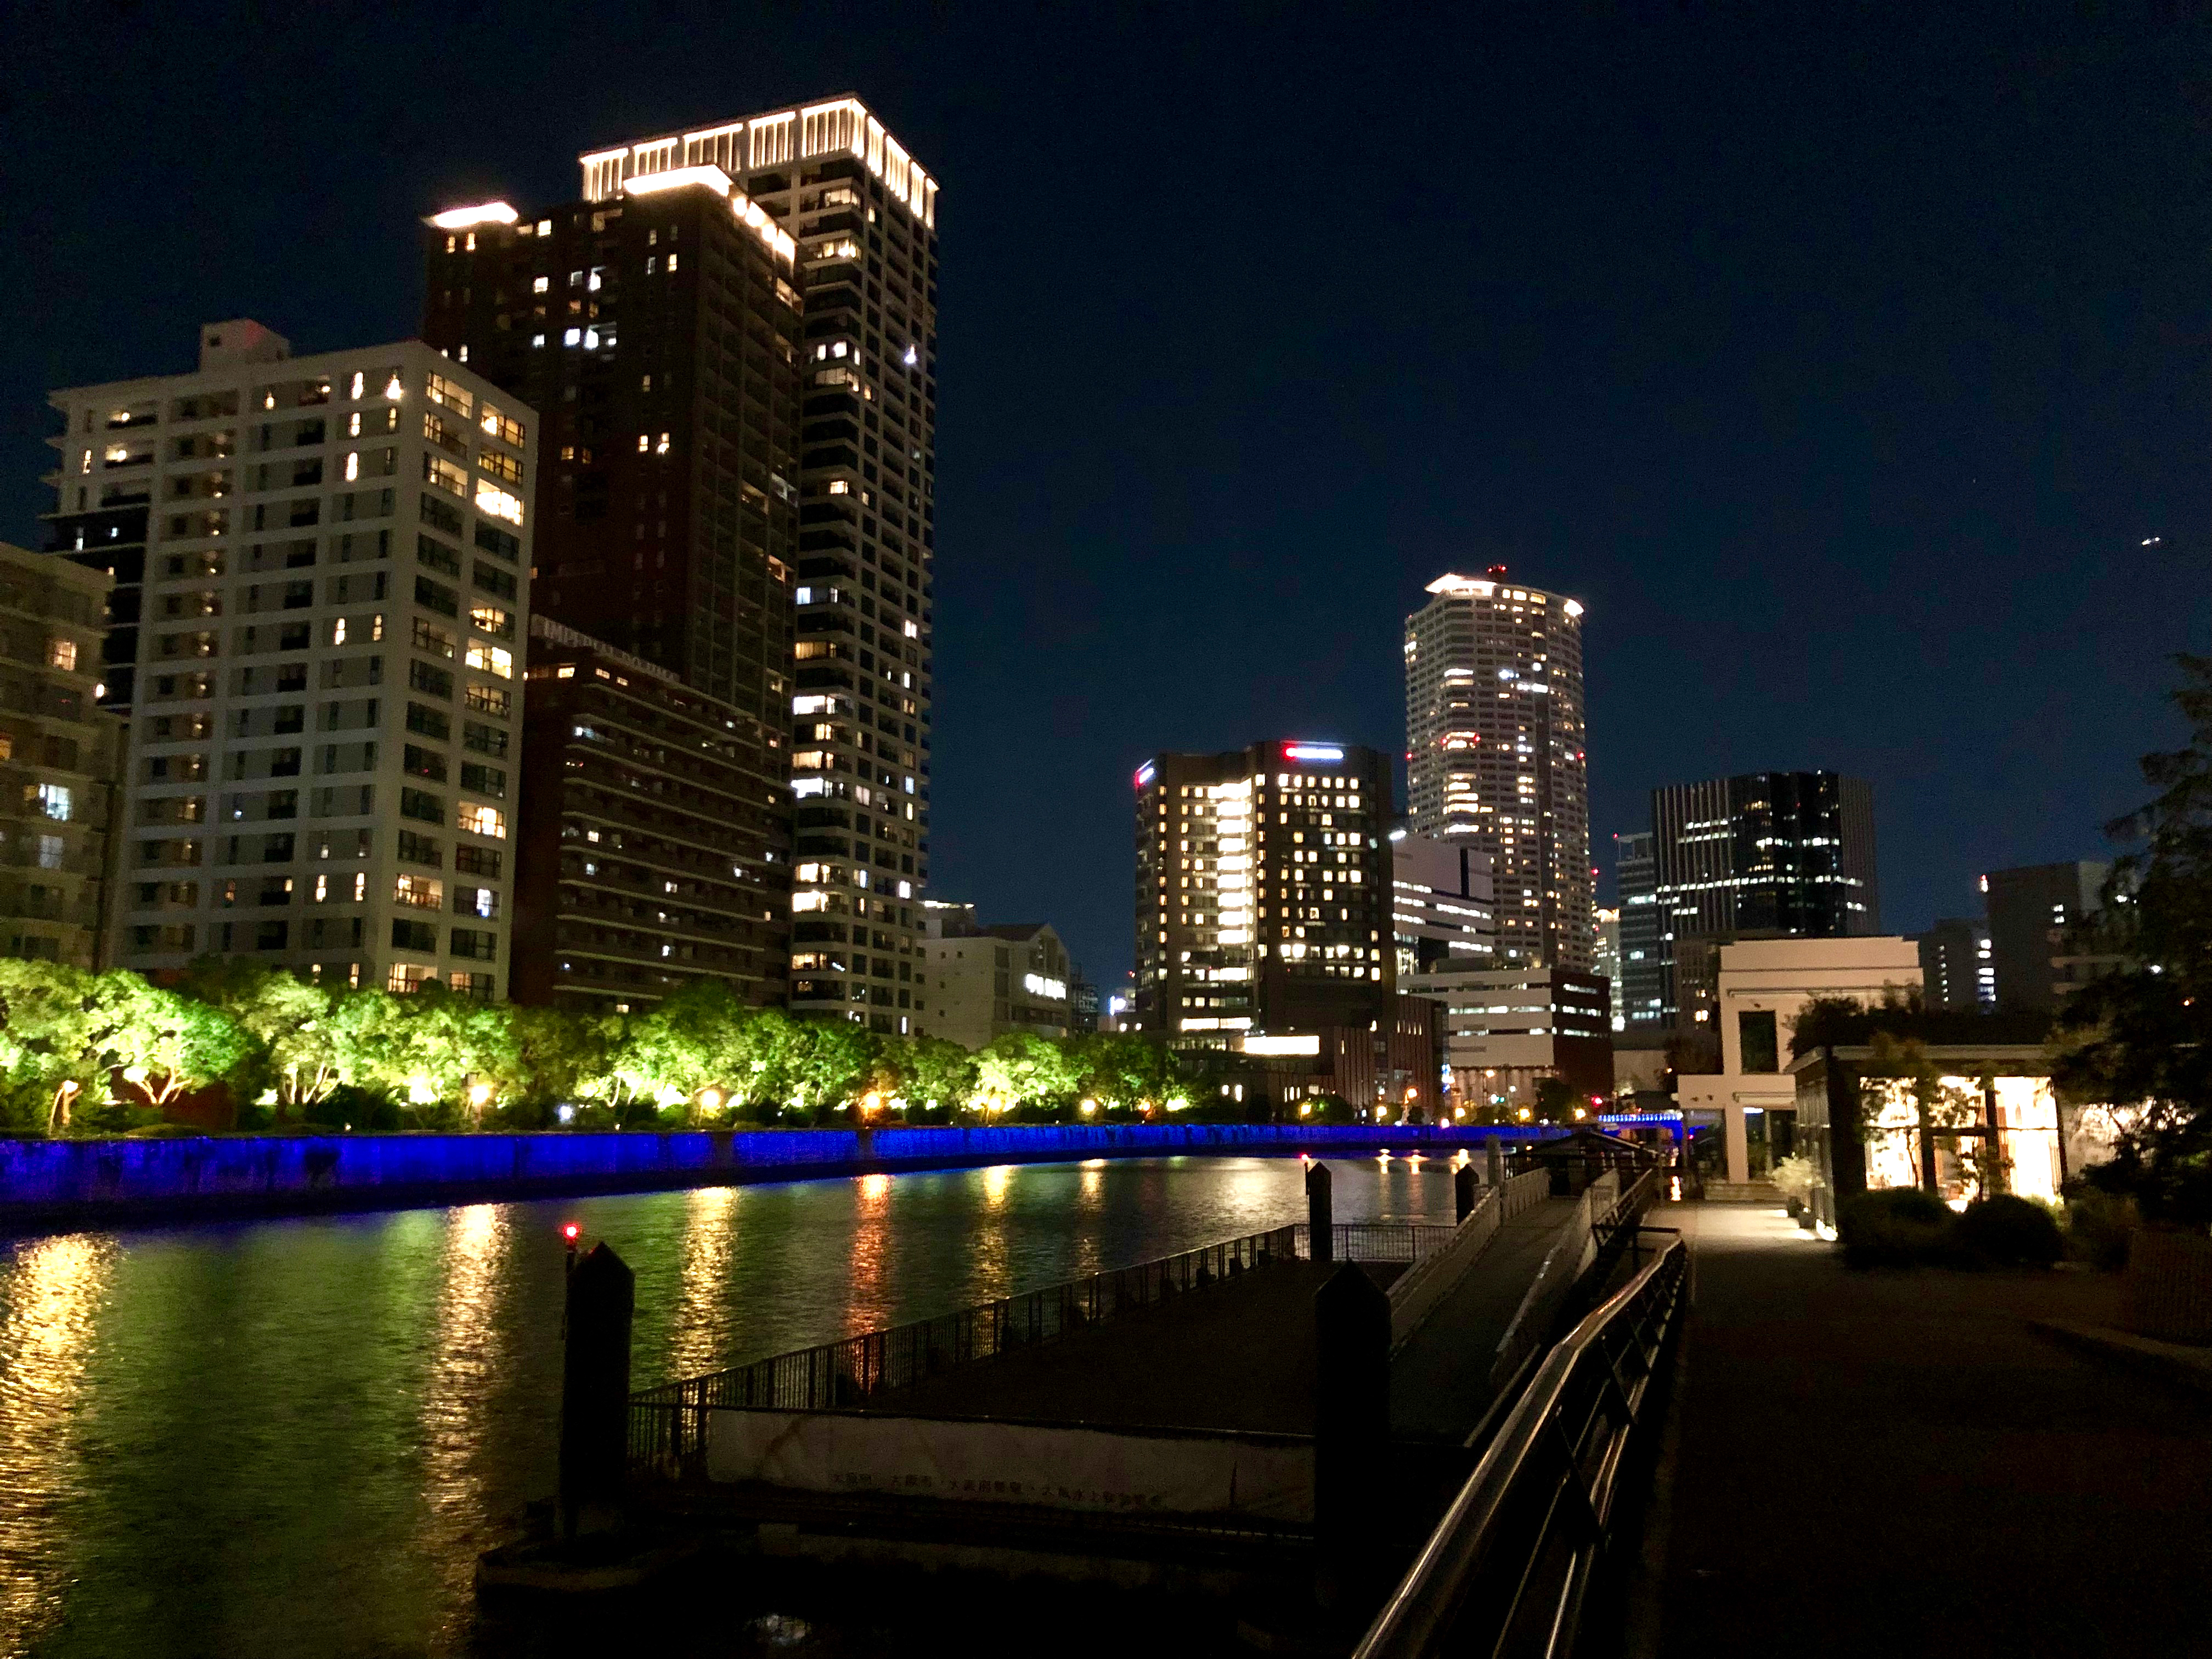 川沿いの夜景 5 無料写真 フリー素材のダウンロードサイト もある